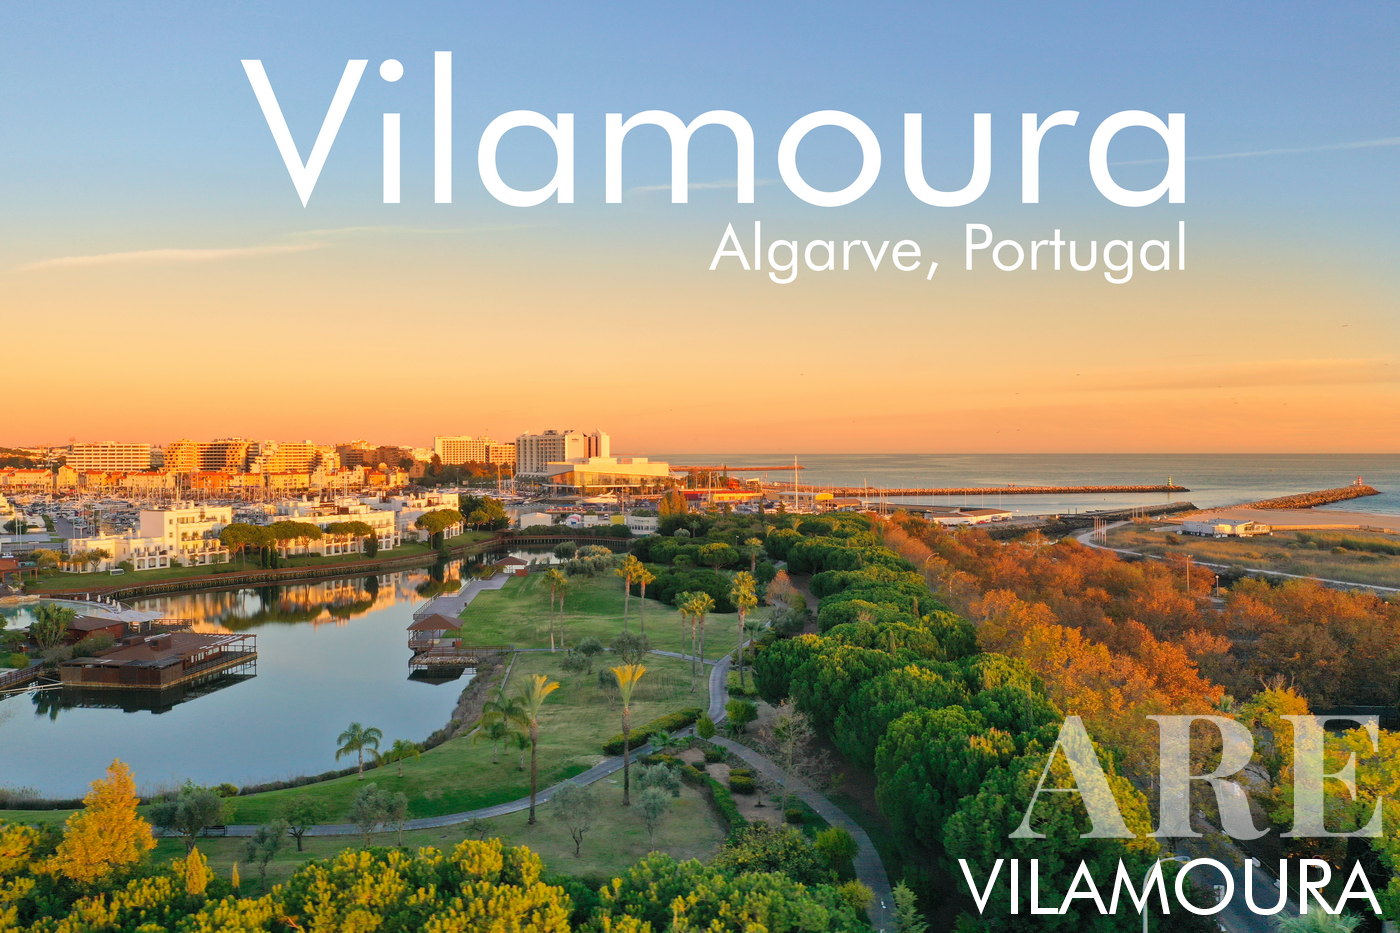 Vista aérea da vila de Vilamoura, Marina, hotéis e praia